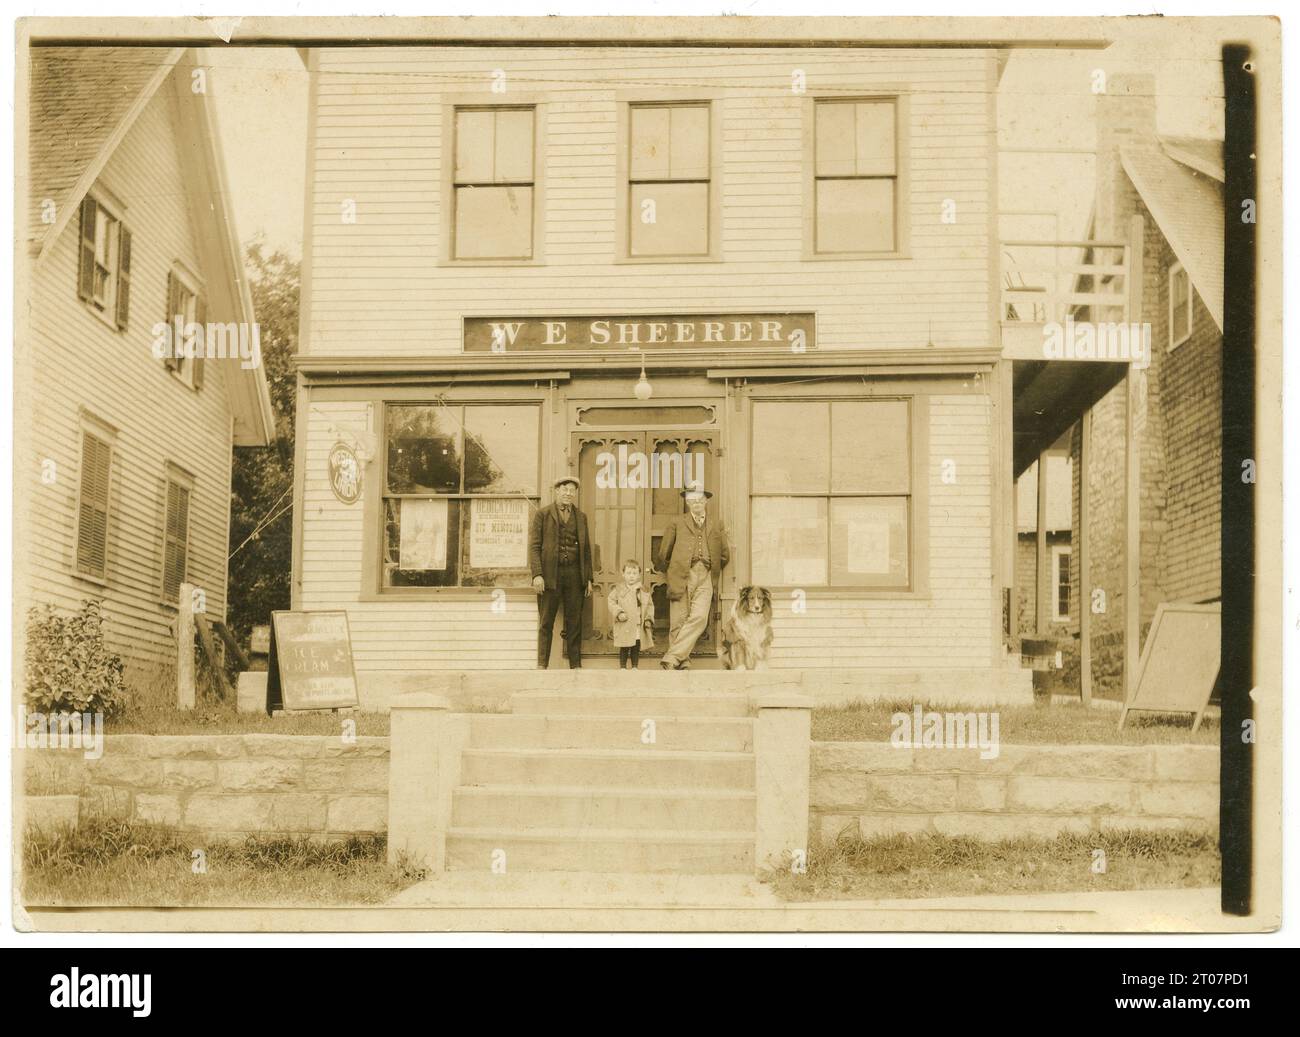 Antikes Foto von 1923, Ladenfront für W.E. Sheerer in Pächtern Harbor, St. George, Maine. Vermutlich zeigt er drei Familiengenerationen der Sheerer-Familie. Ein Poster im Fenster zeigt die Einweihung des Hix Memorial in South Thomaston, ME, die 1923 stattfand. QUELLE: ORIGINALFOTO Stockfoto